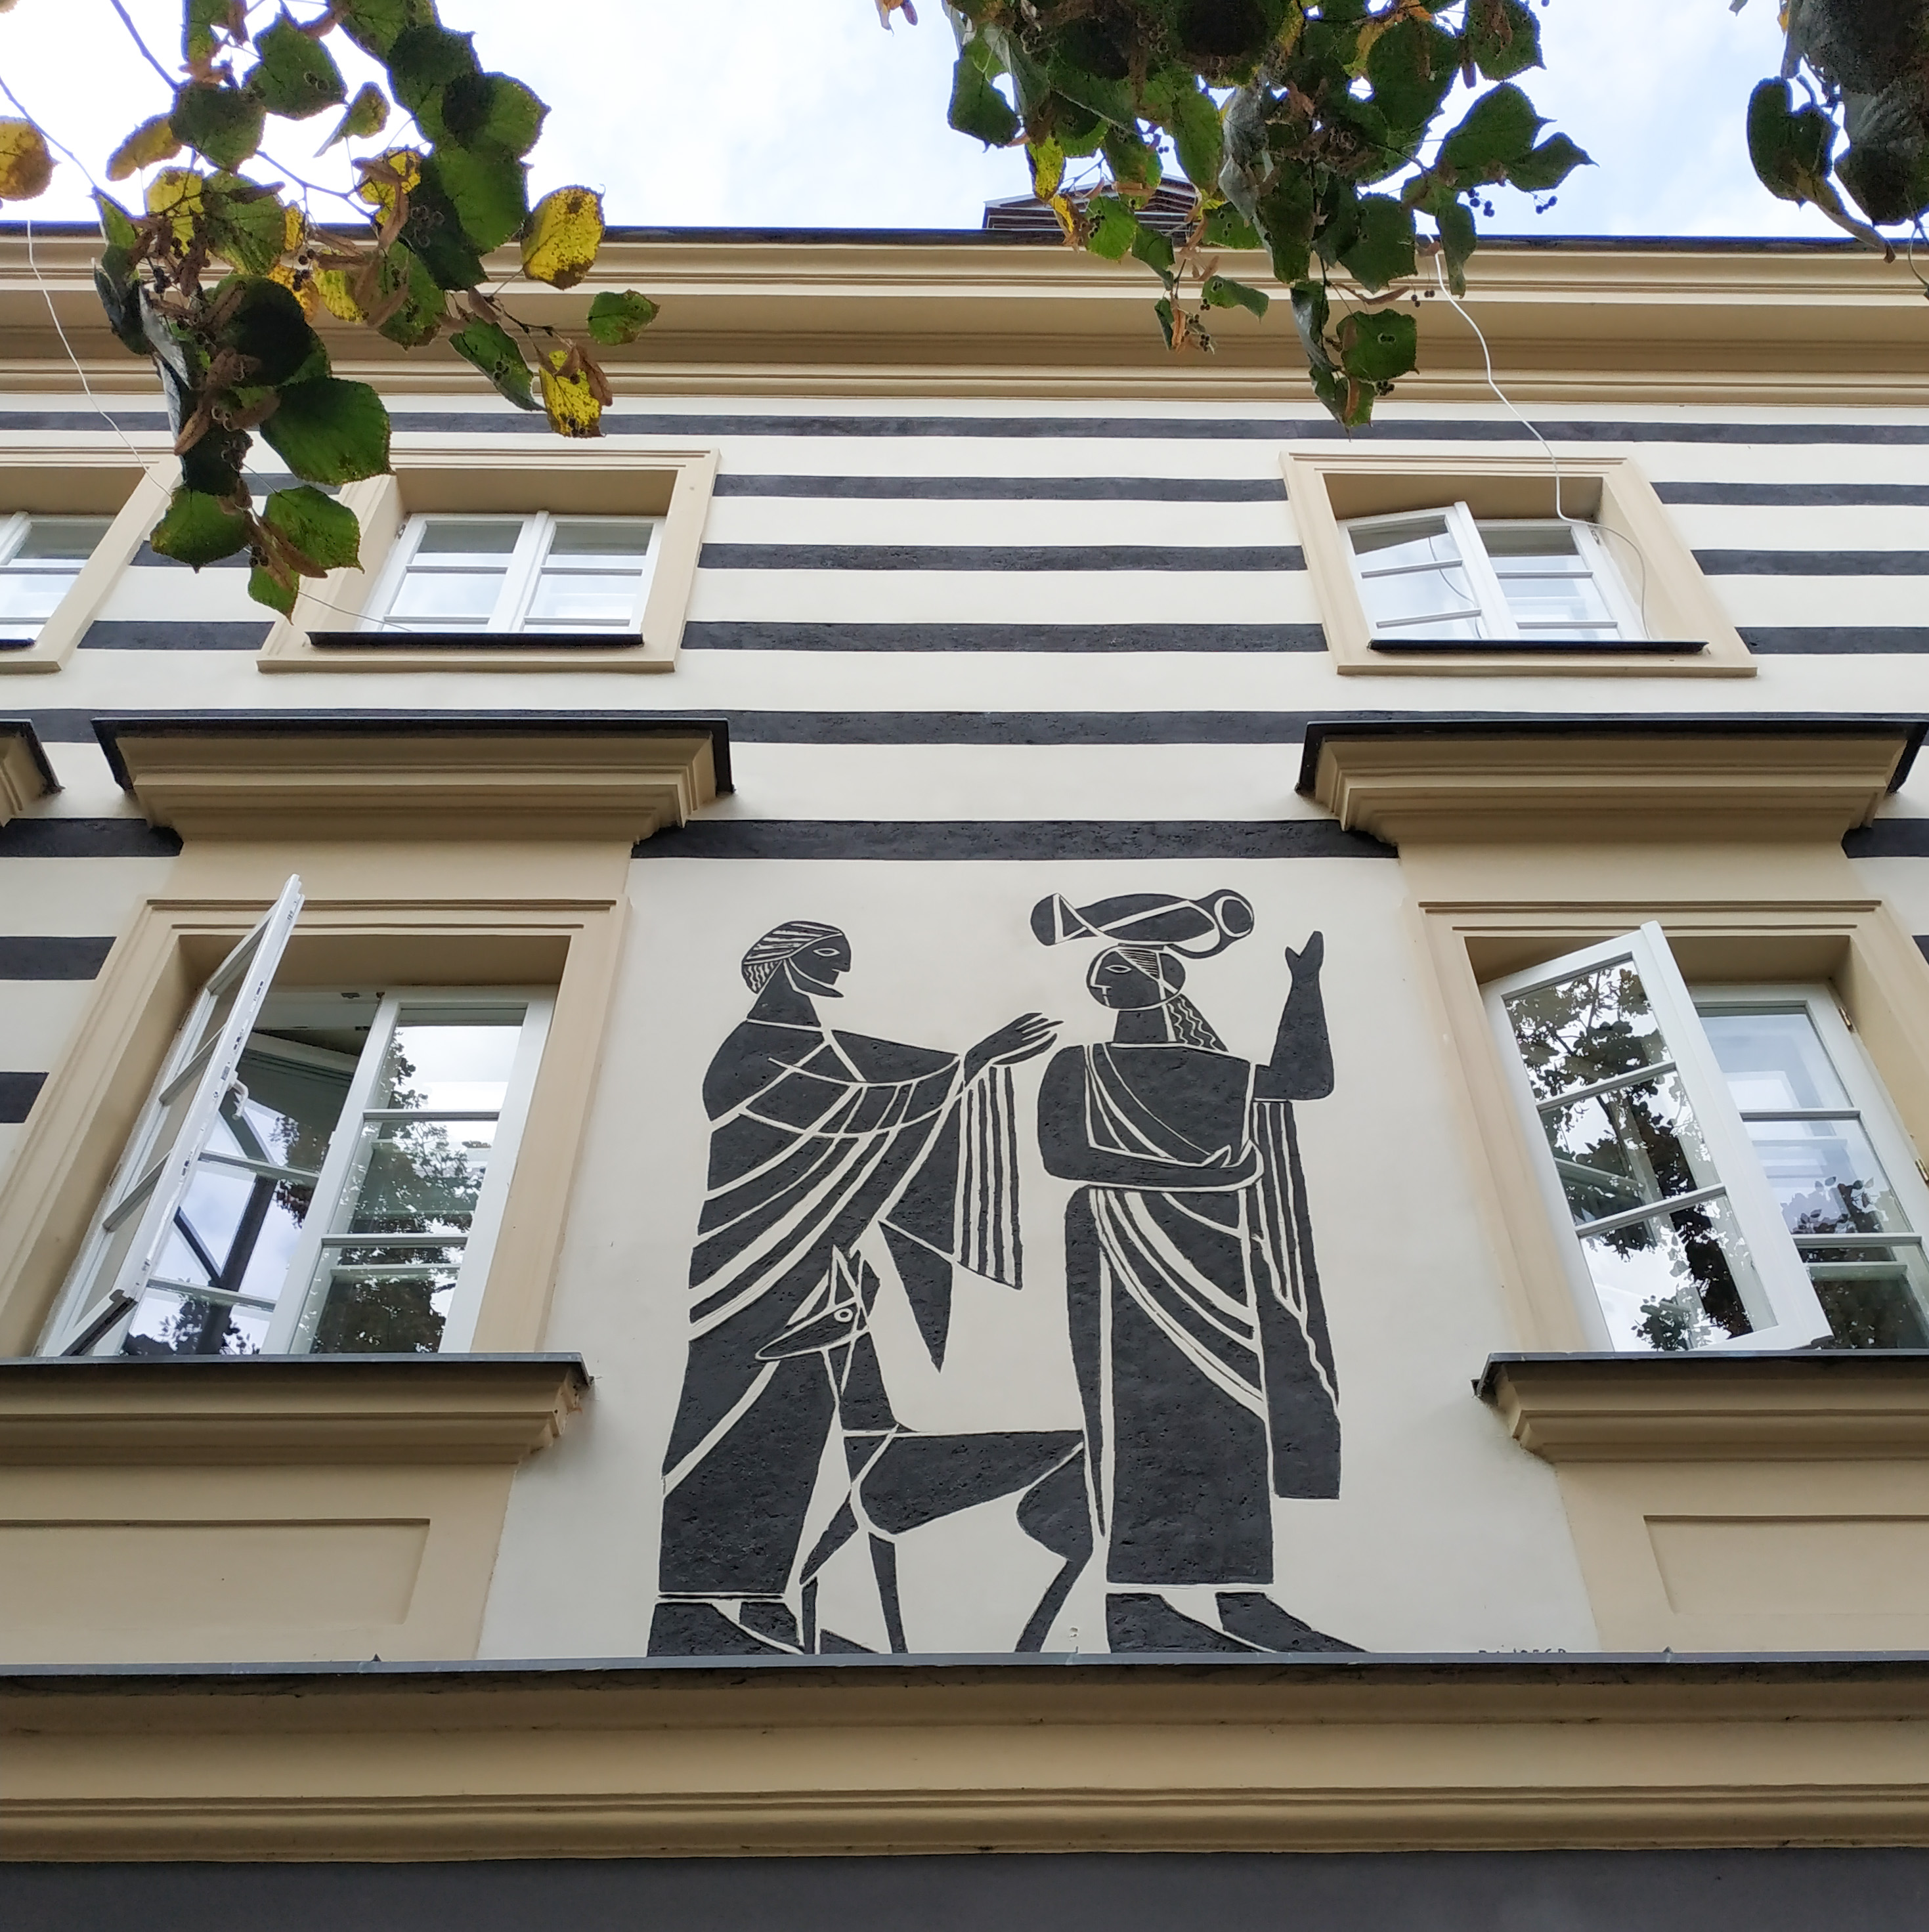 ściana budynku w kolorze kremowymz oknami, na jej tle w kolorze czarnym  fresa przestawiajaca kobietę z dzbanem na głowie i mężczyznę z psem 